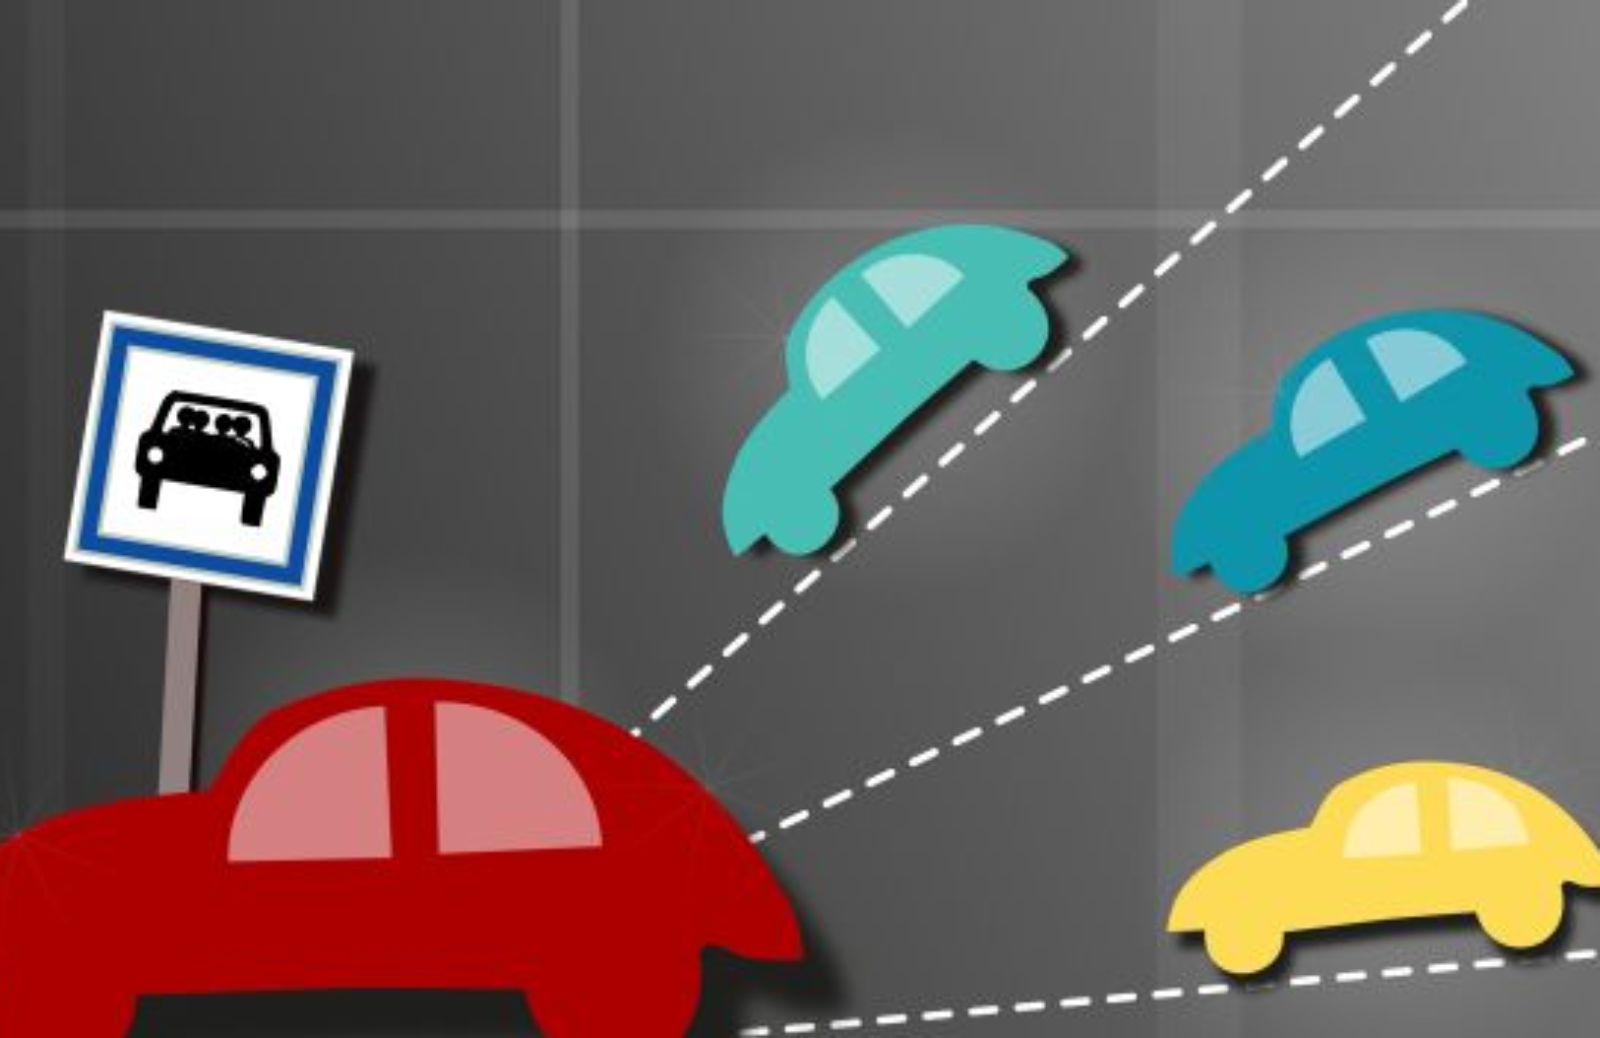 Carpooling Certificate, l’App ai tempi dell’autostop 2.0